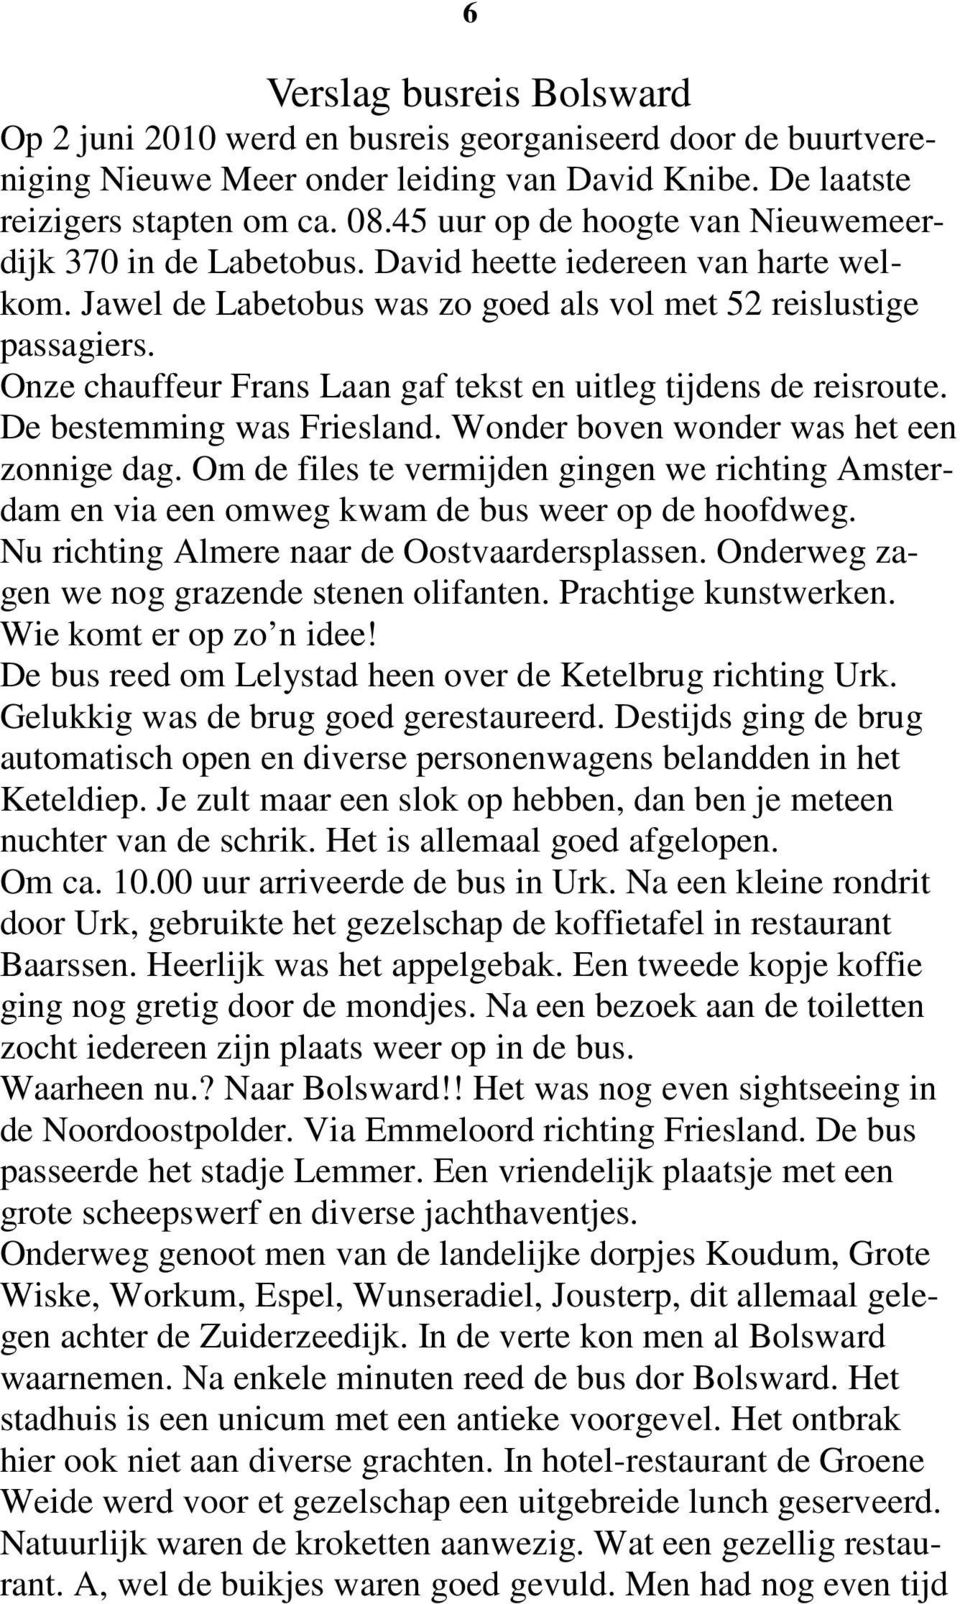 Onze chauffeur Frans Laan gaf tekst en uitleg tijdens de reisroute. De bestemming was Friesland. Wonder boven wonder was het een zonnige dag.